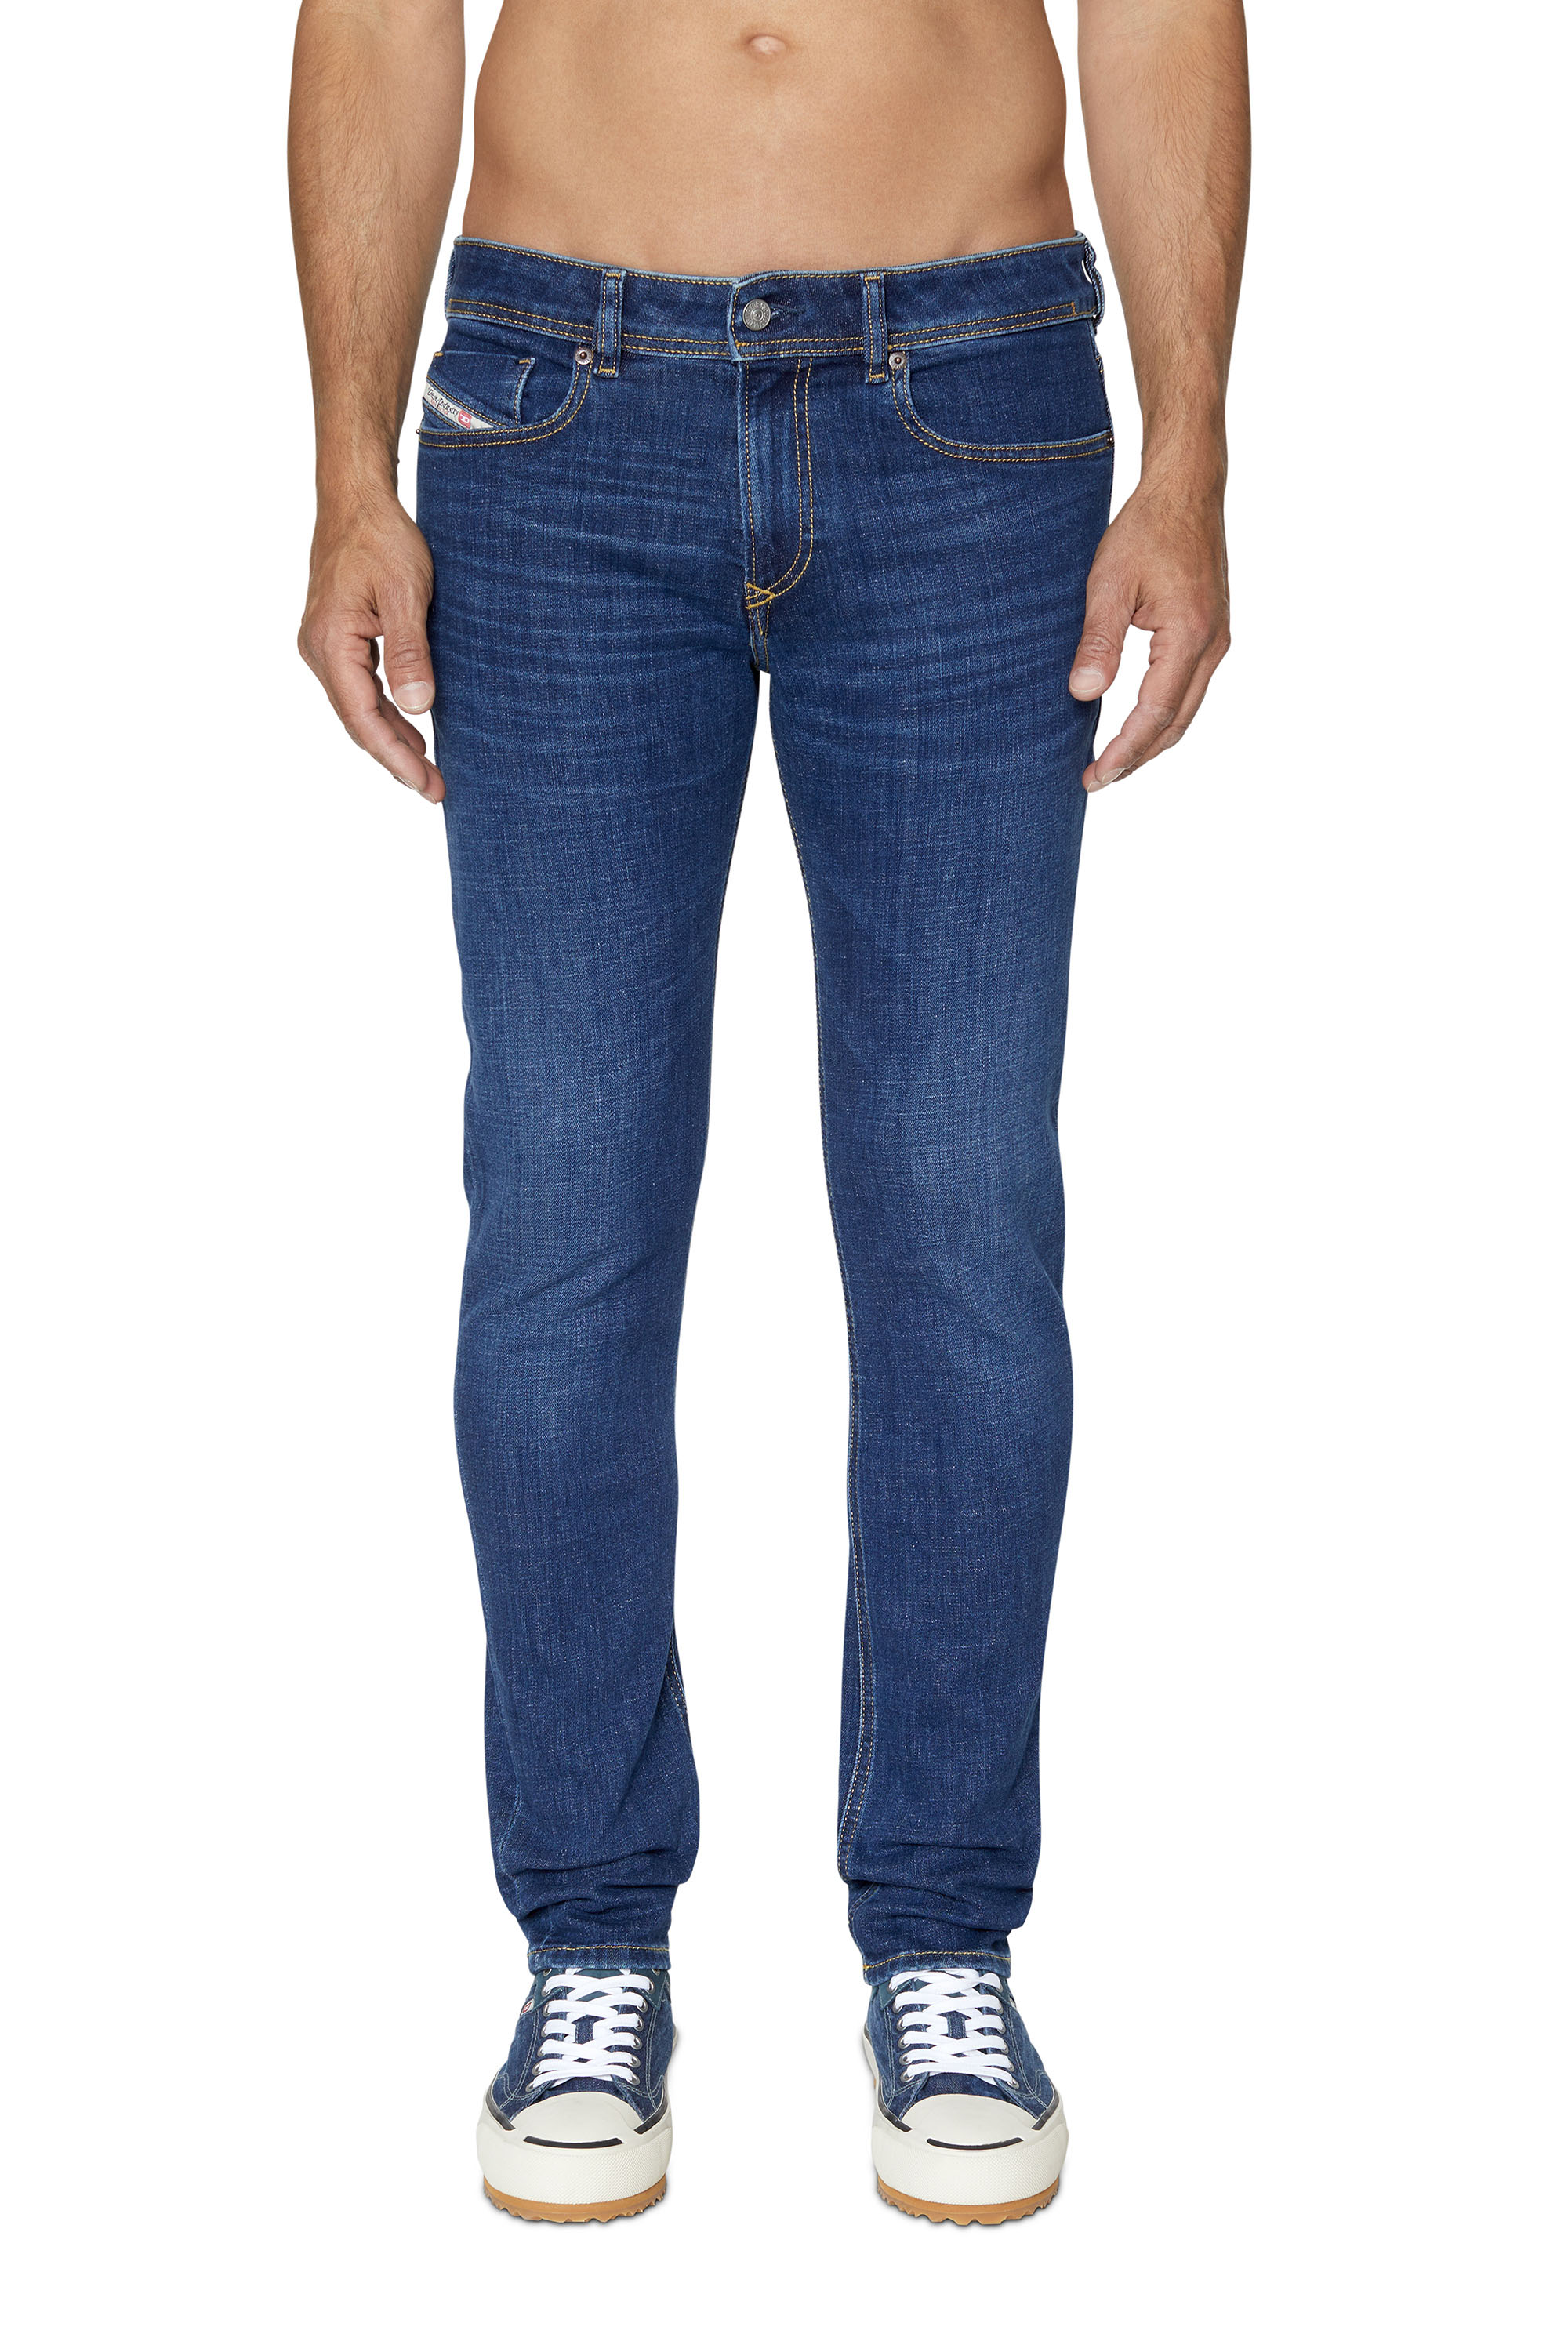 Diesel - Male Skinny Jeans 1979 Sleenker 09B98, Dark Blue - Image 2